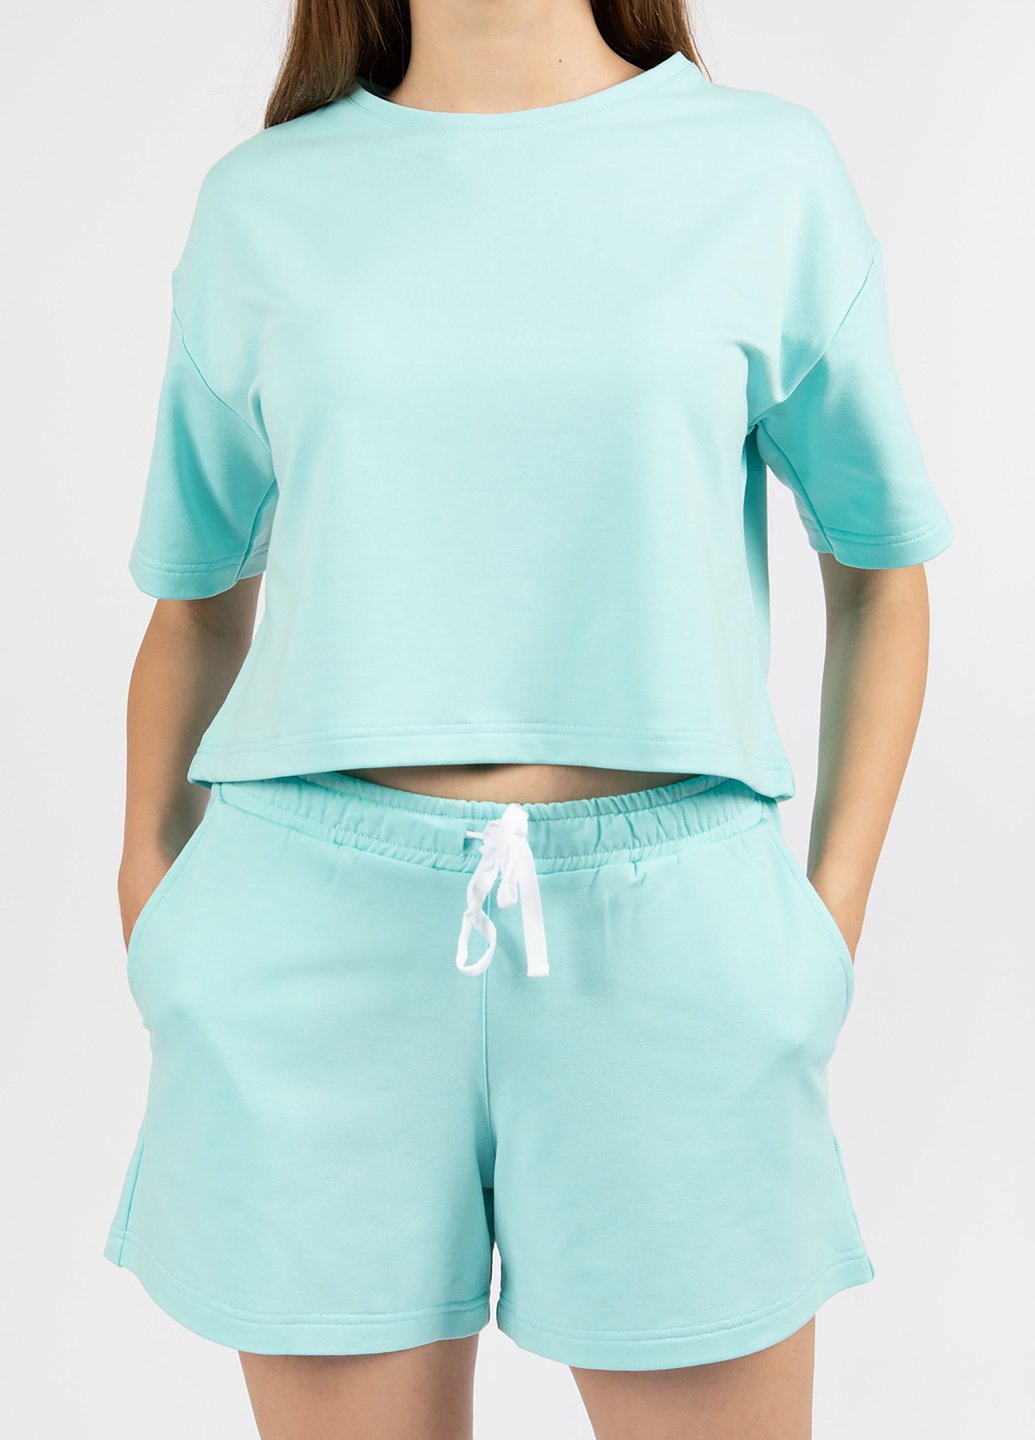 Купить Оверсайз футболка женская Merlini Нарбон 800000003 - Голубой, 42-44 в интернет-магазине